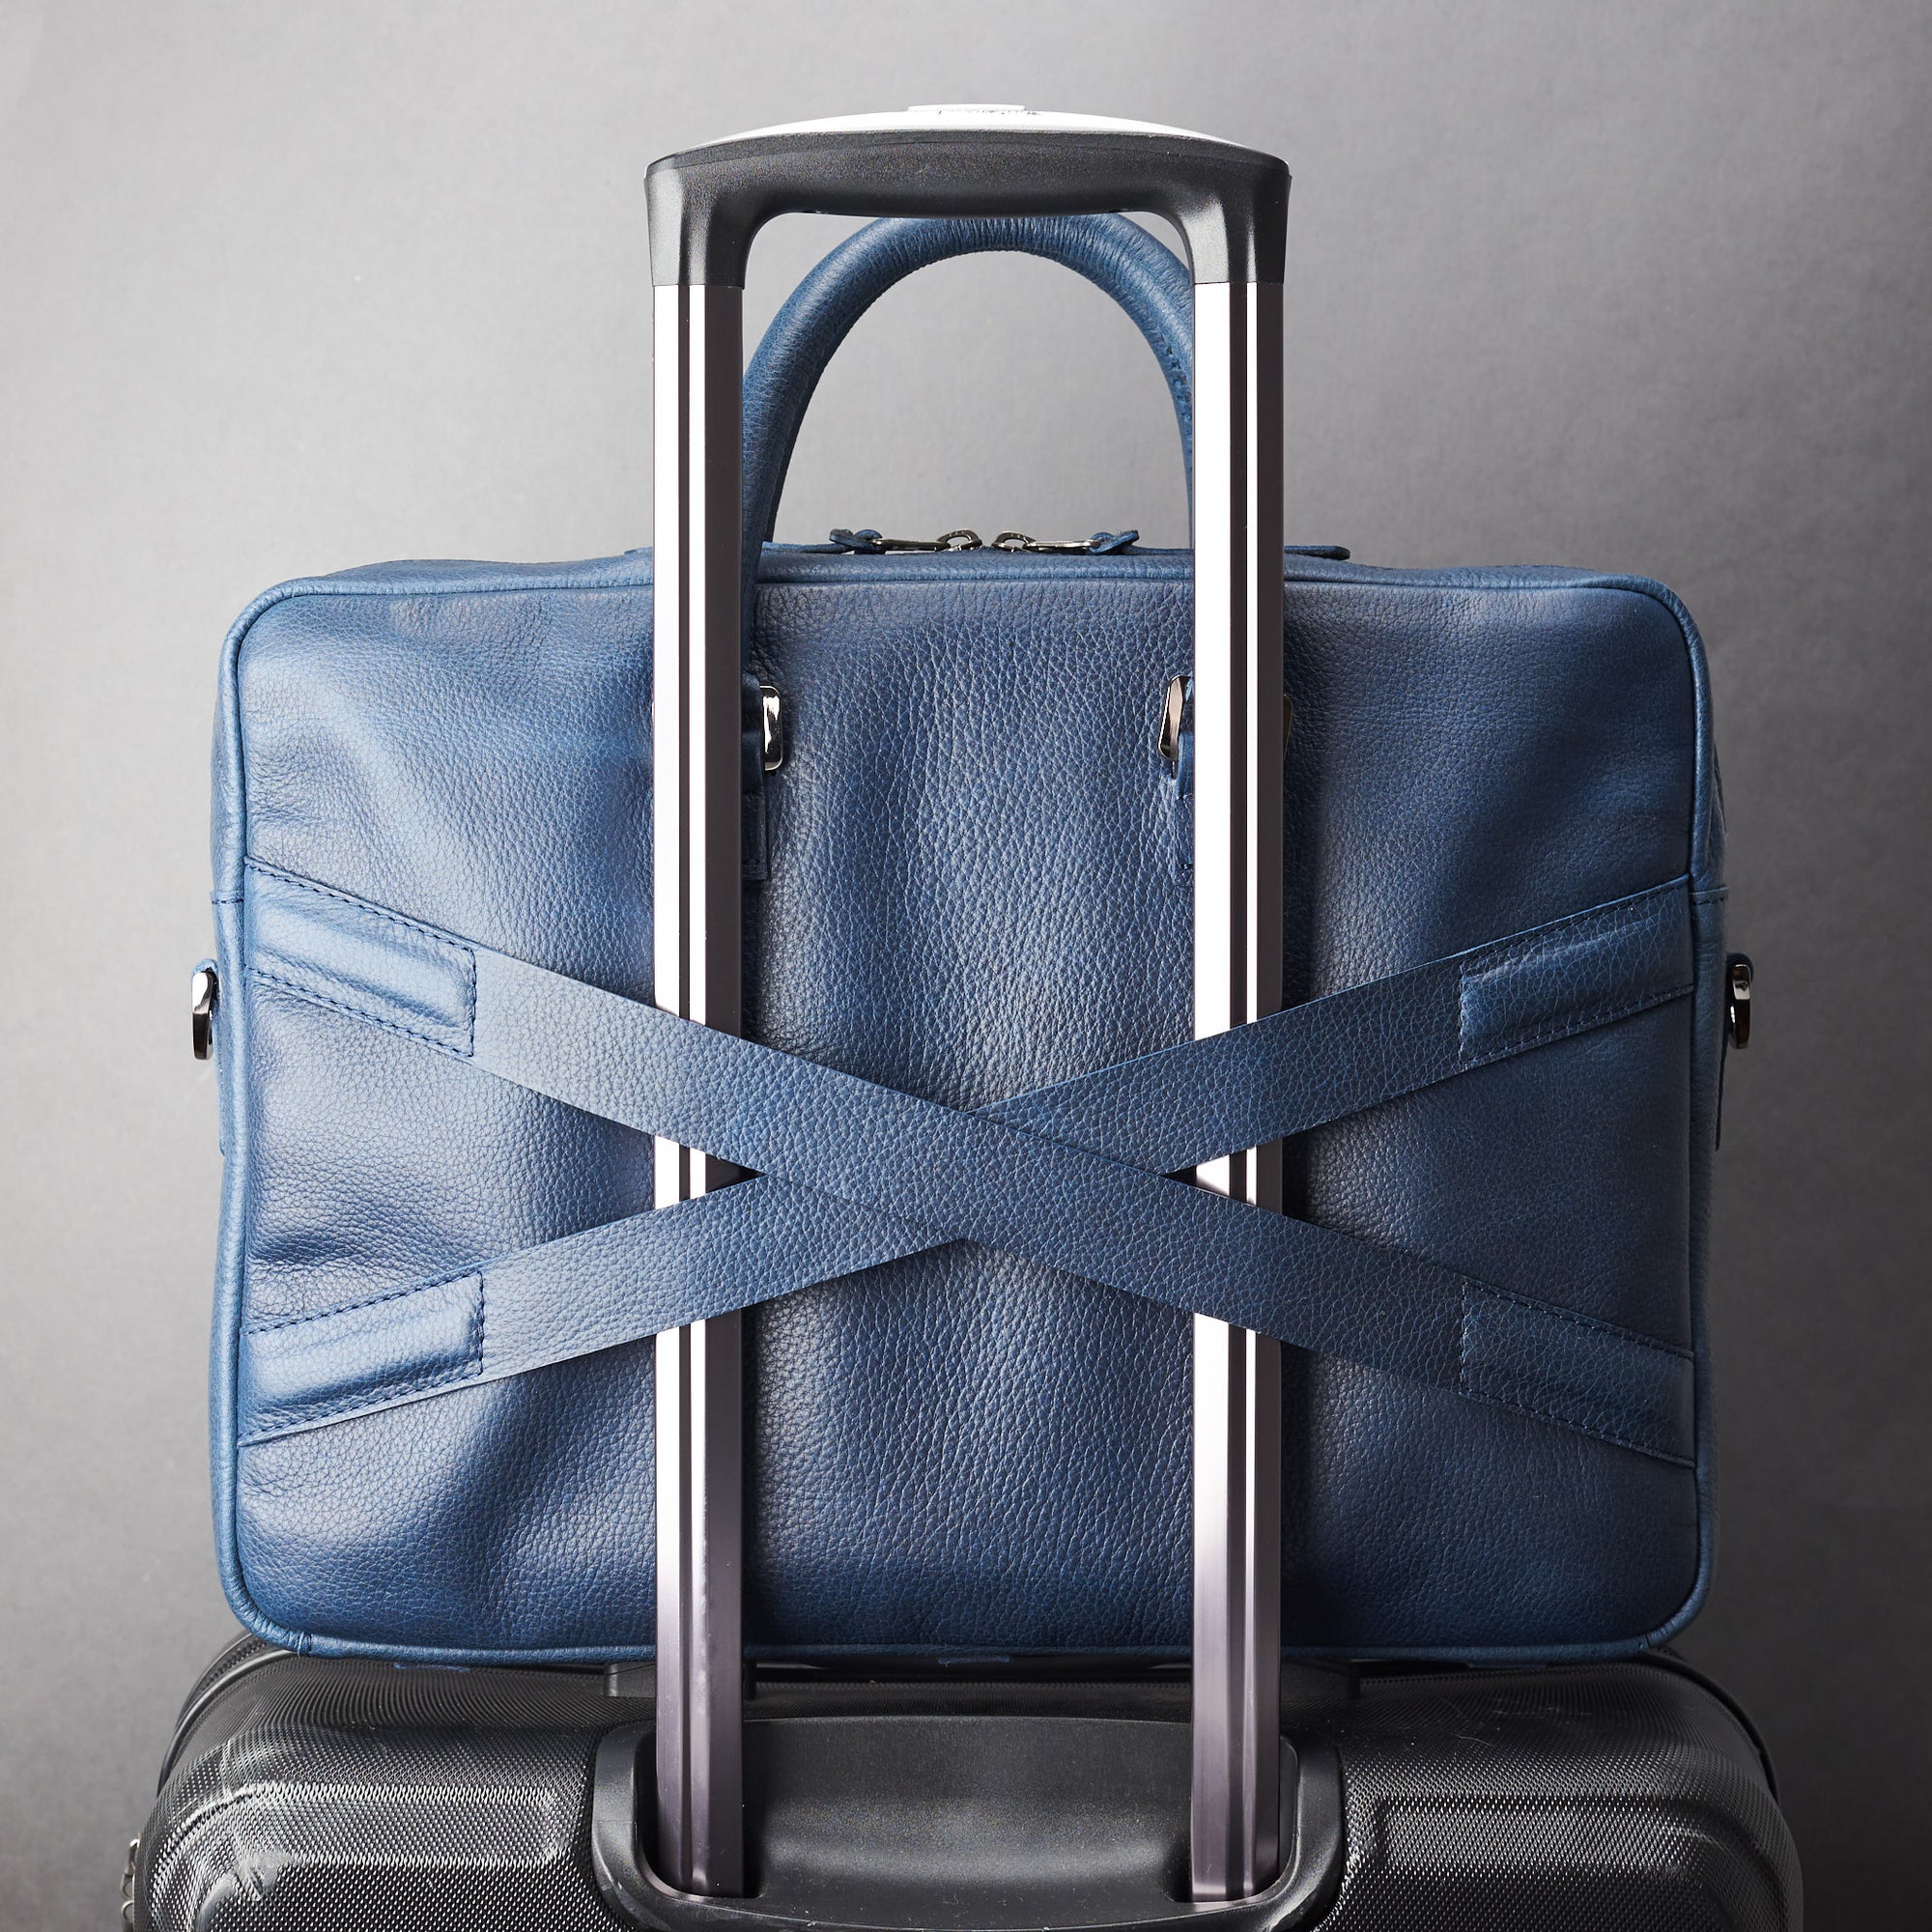 Luggage strap in x shape for messenger bag. Blue leather briefcase laptop bag for men. Gazeli laptop briefcase by Capra Leather.